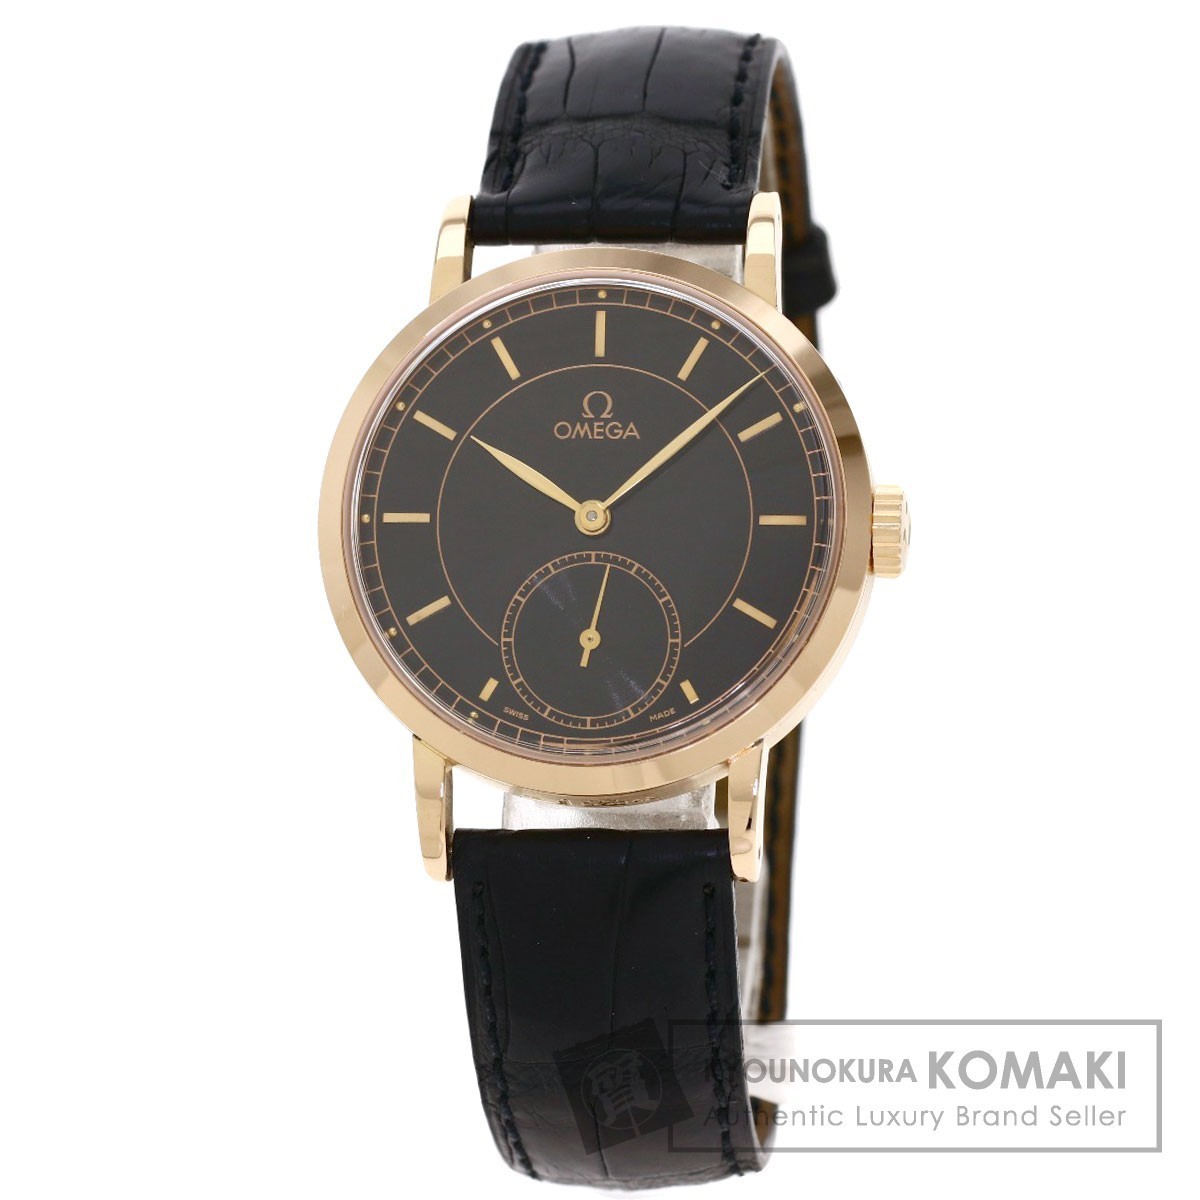 何でも揃う OMEGA オメガ 5950.51.01 ルネッサンス 世界限定 1894本 腕時計 K18ピンクゴールド 革 メンズ  アクセサリー、時計